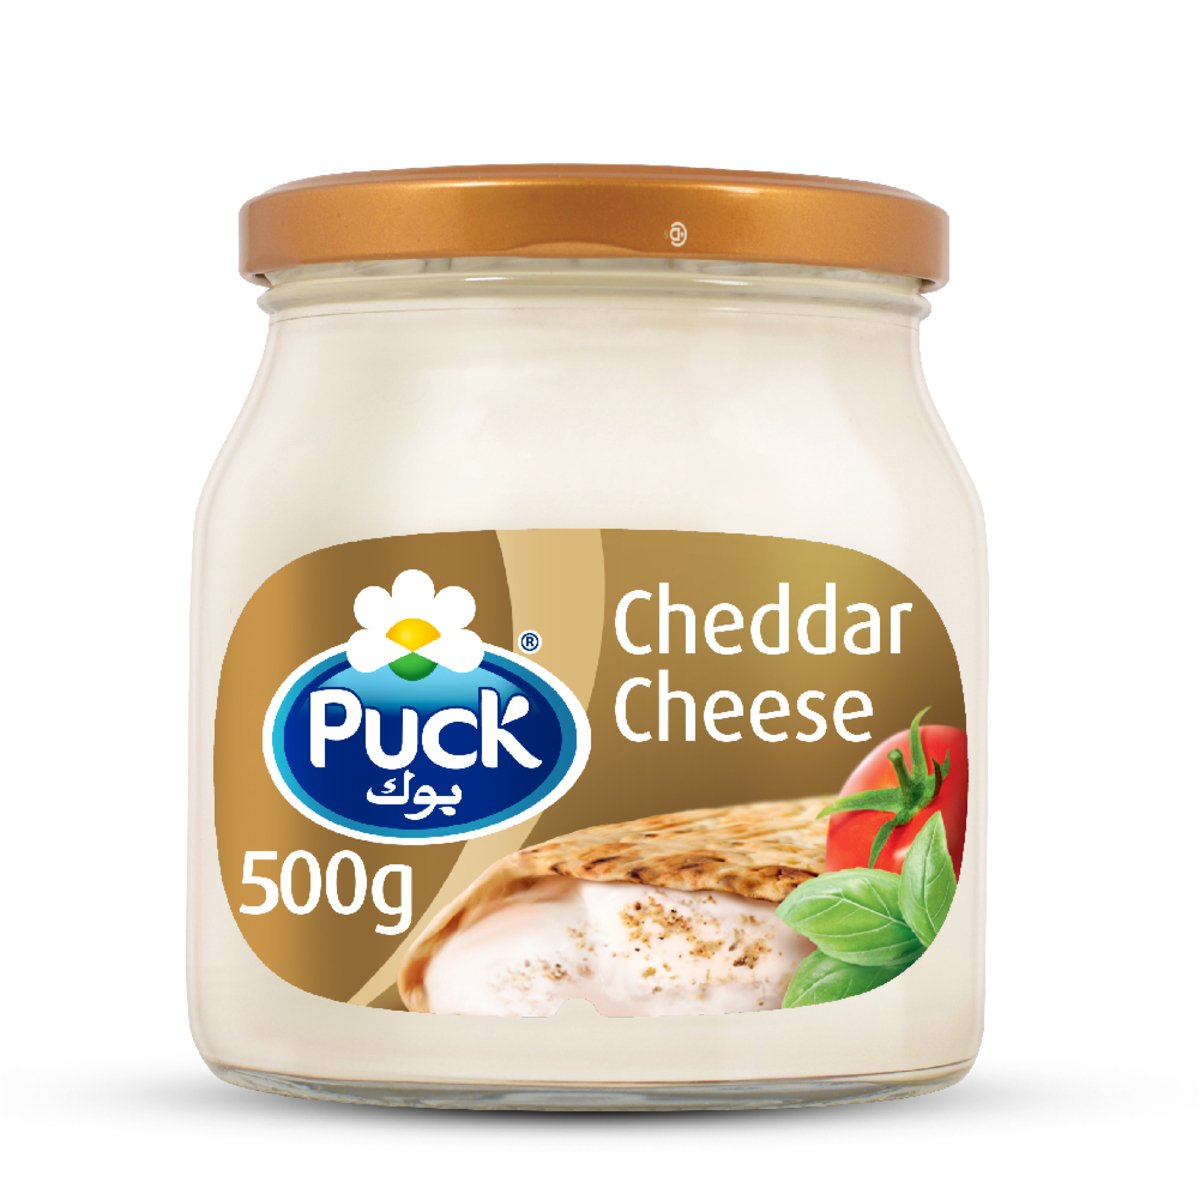 اشتري قم بشراء بوك جبنة كريم شيدر قابلة للدهن في جرة 500 جم Online at Best Price من الموقع - من لولو هايبر ماركت Jar Cheese في السعودية